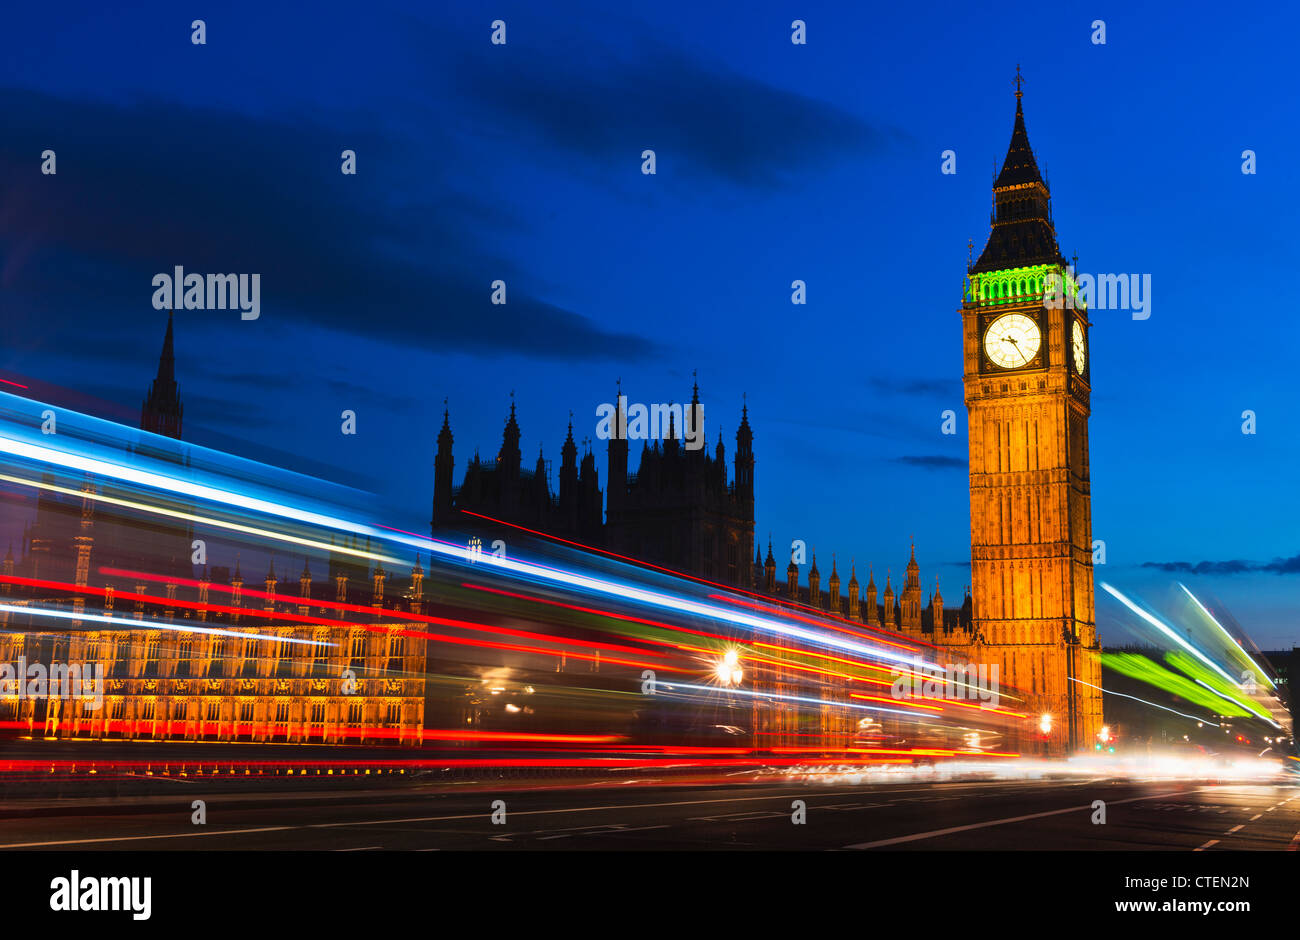 Royaume-uni, Angleterre, Londres, Big Ben et light trails de nuit Banque D'Images